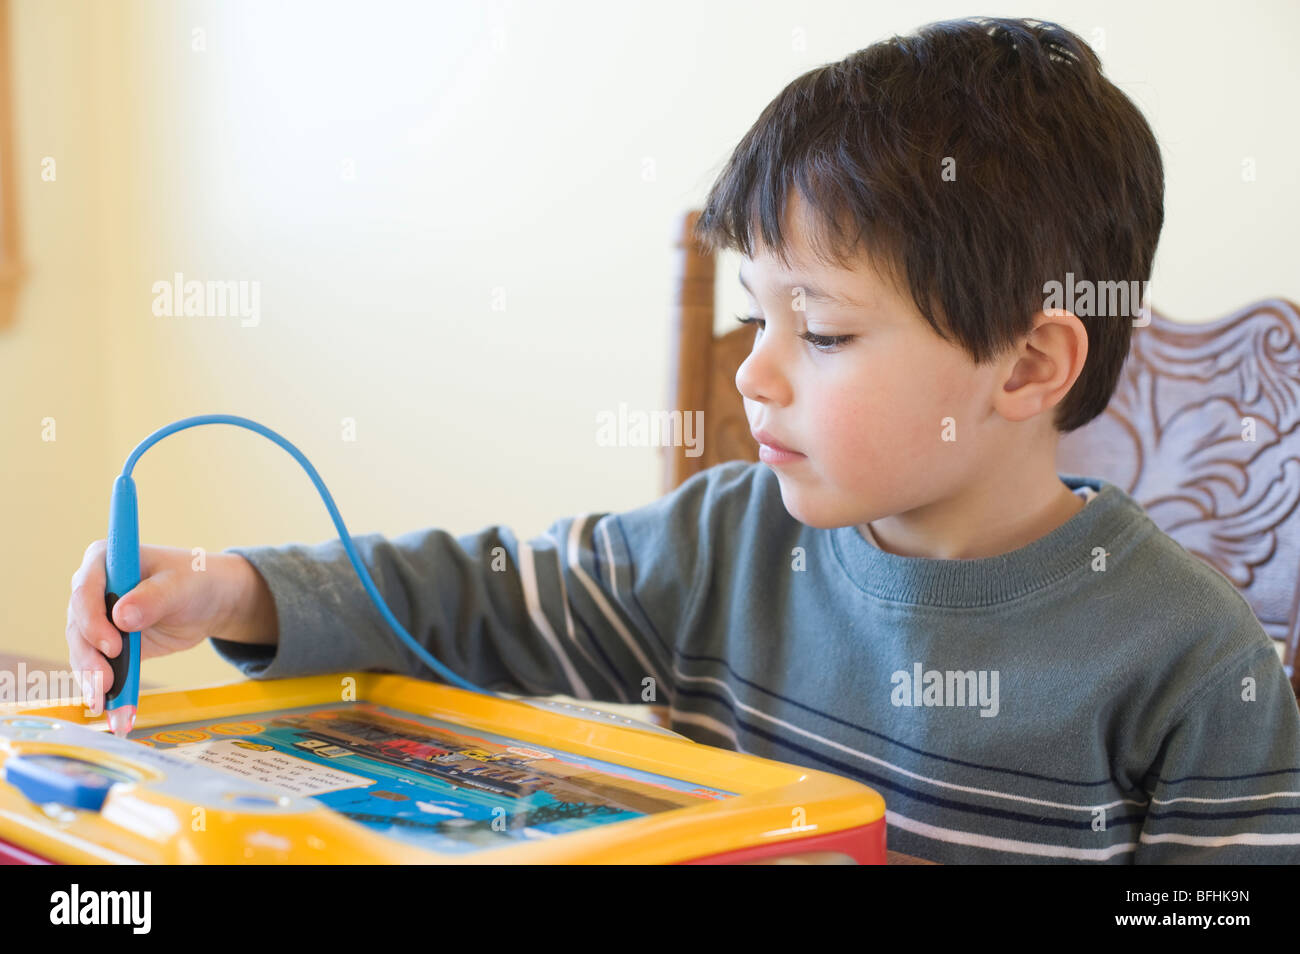 Vier Jahr spielt alte Hispanic Boy mit einer "Vtec" Marke Thomas und Freunde interaktiven elektronischen Spielzeug. Bild ist Modell veröffentlicht. Stockfoto